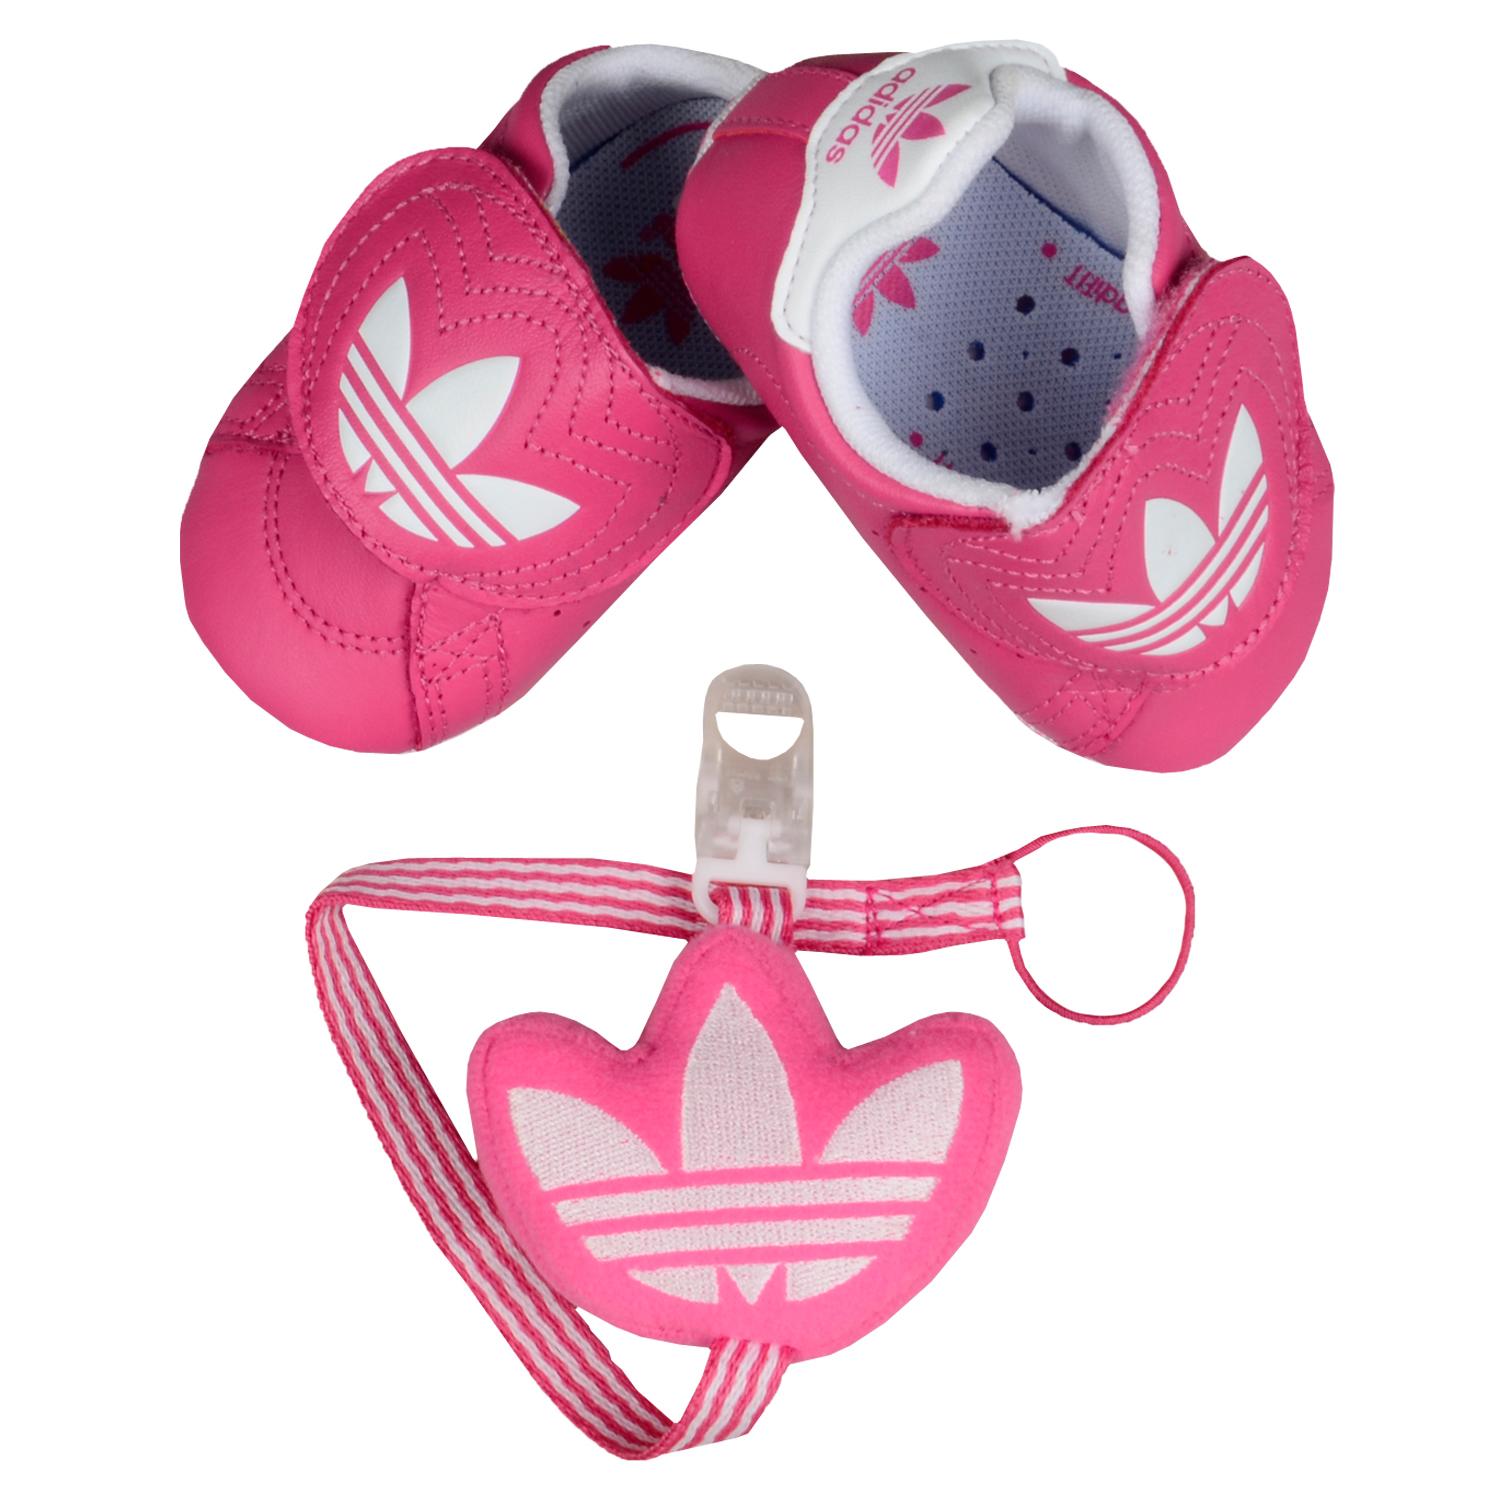 Foto Adidas Junior Shoe Easy On Gs Cf Crib Zapatos De Bebé Rosa Blanco